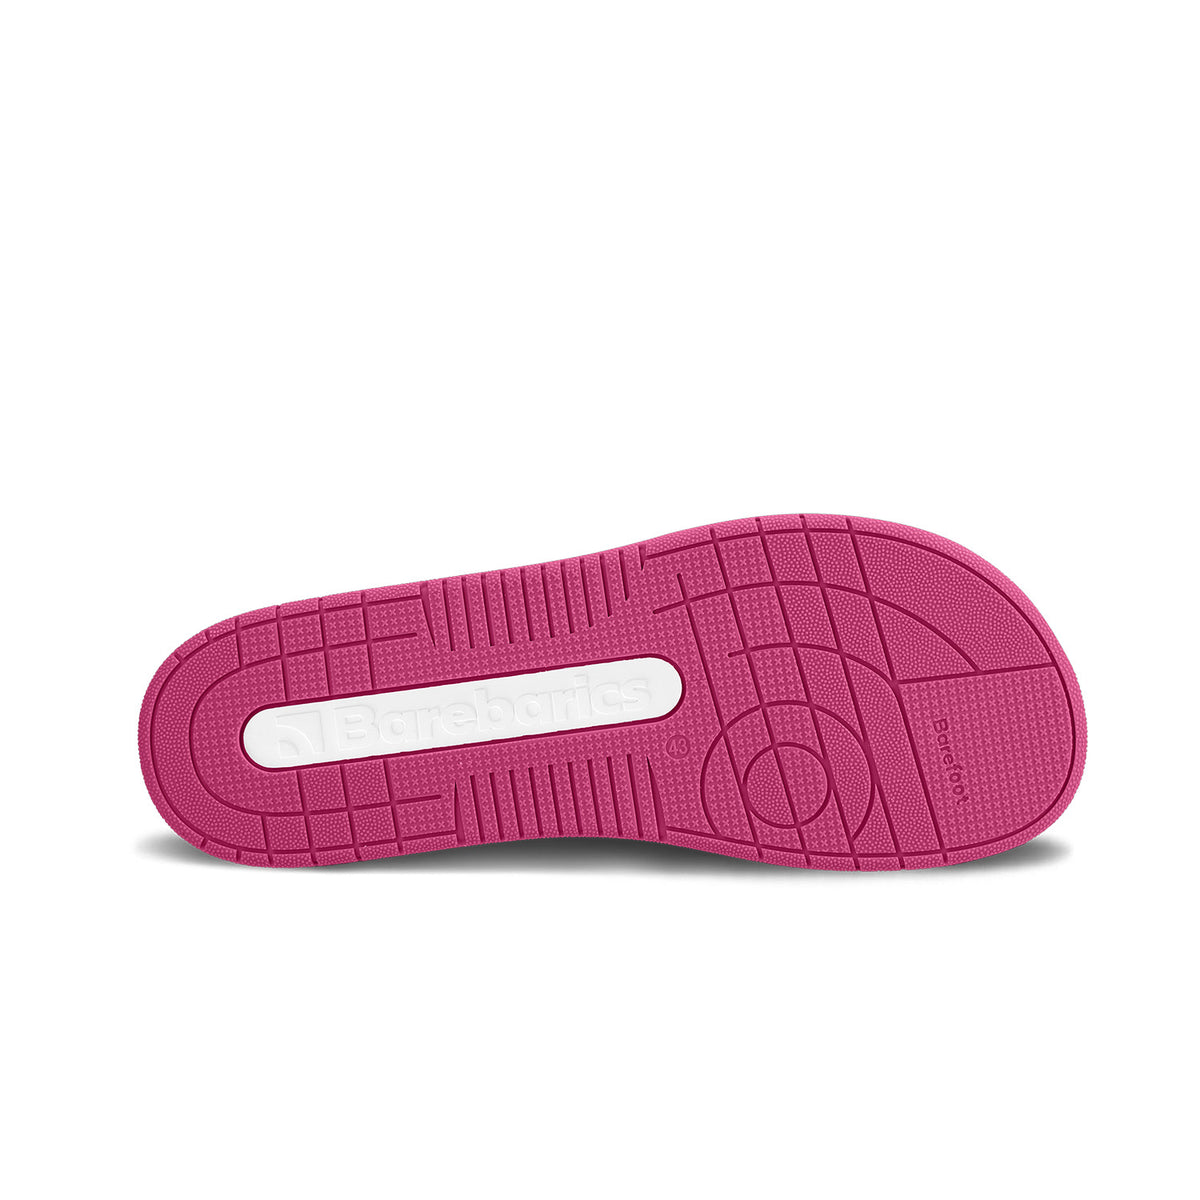 Barefoot Sneakers Barebarics Arise - White & Raspberry Pink 6  - OzBarefoot